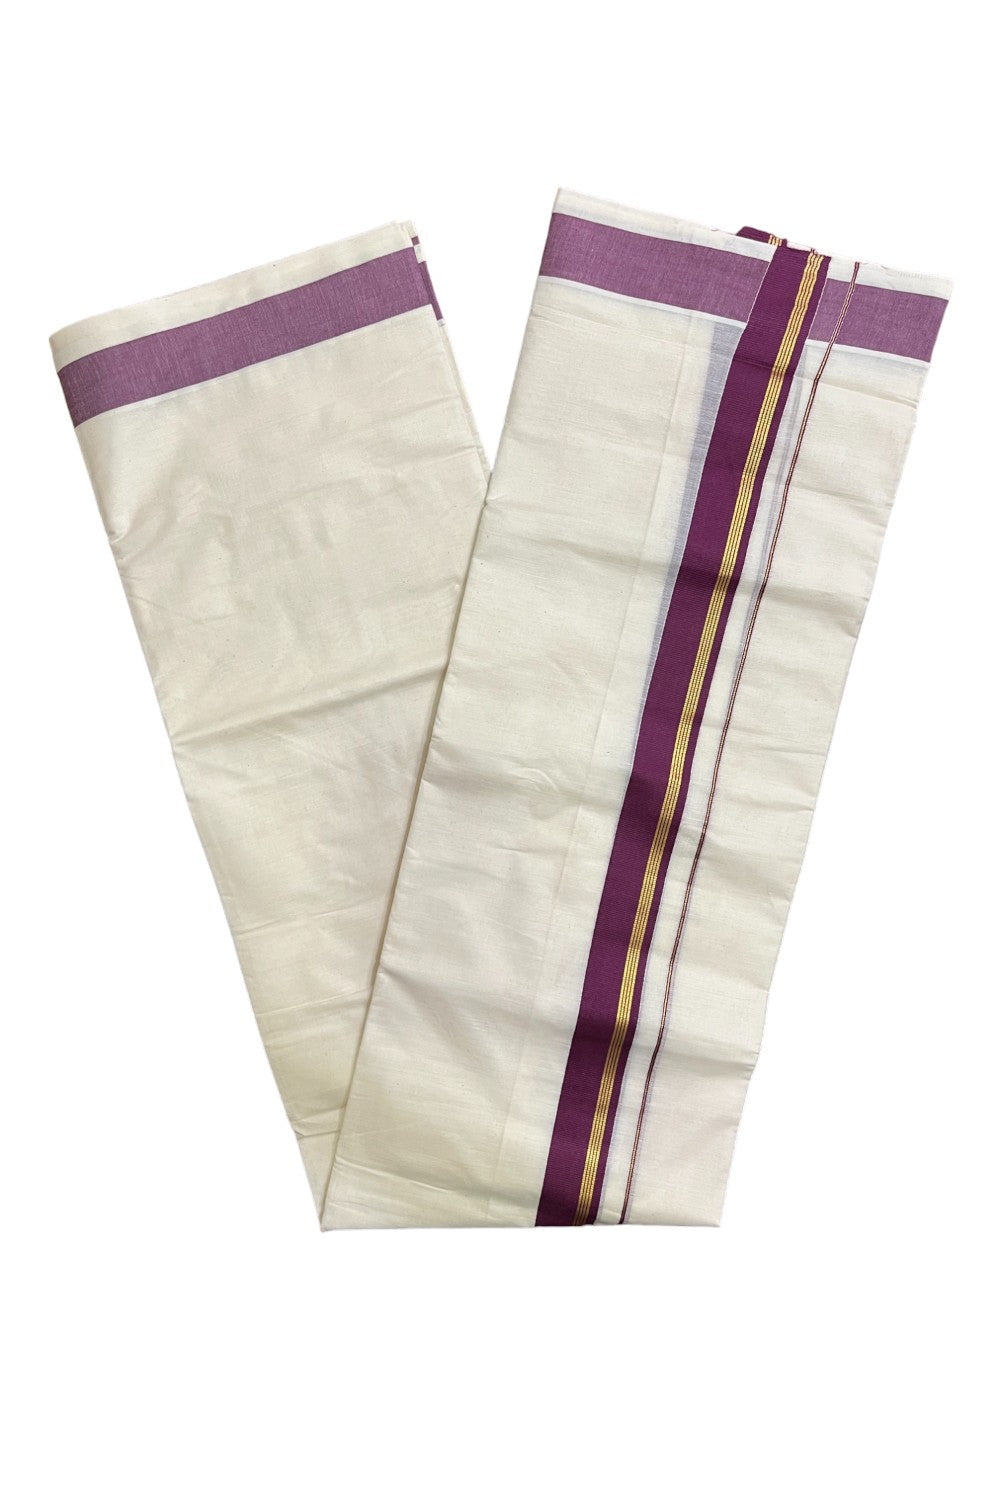 Kerala Pure Cotton Double Mundu with Purple and Kasavu Border (South Indian Kerala Dhoti)